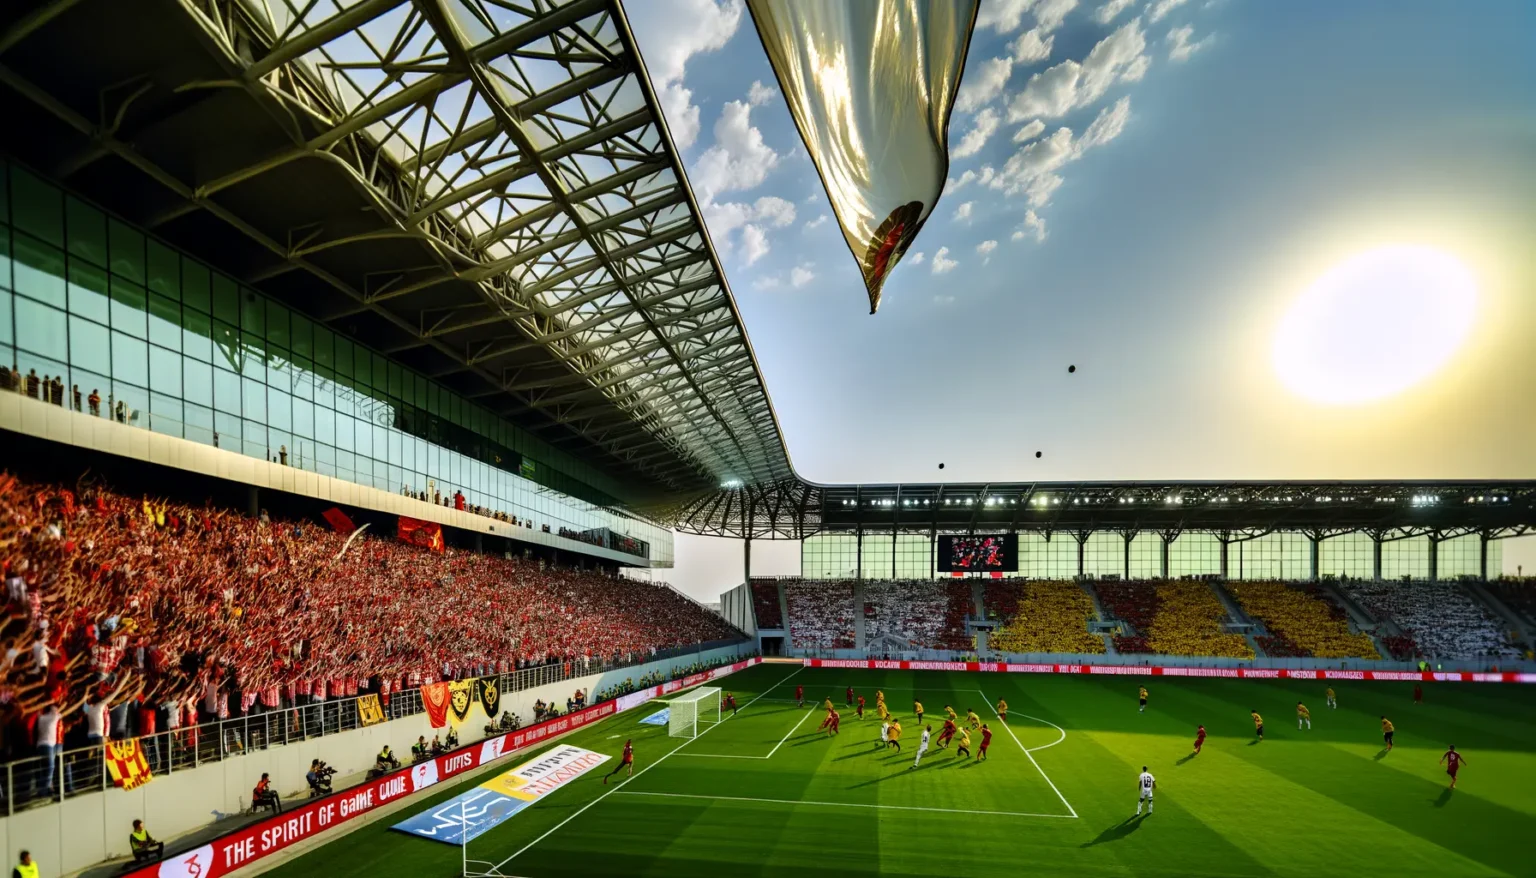 Ein Fußballspiel bei Sonnenuntergang in einem großen Stadion, gefüllt mit Fans in roten und weißen Trikots. Die Szene zeigt Spieler auf dem grünen Spielfeld, während ein Ball in der Luft fliegt und ein Luftschiff über dem Spielfeld schwebt. Sonnenlicht strahlt über das Stadion, und der Himmel ist teils bewölkt.